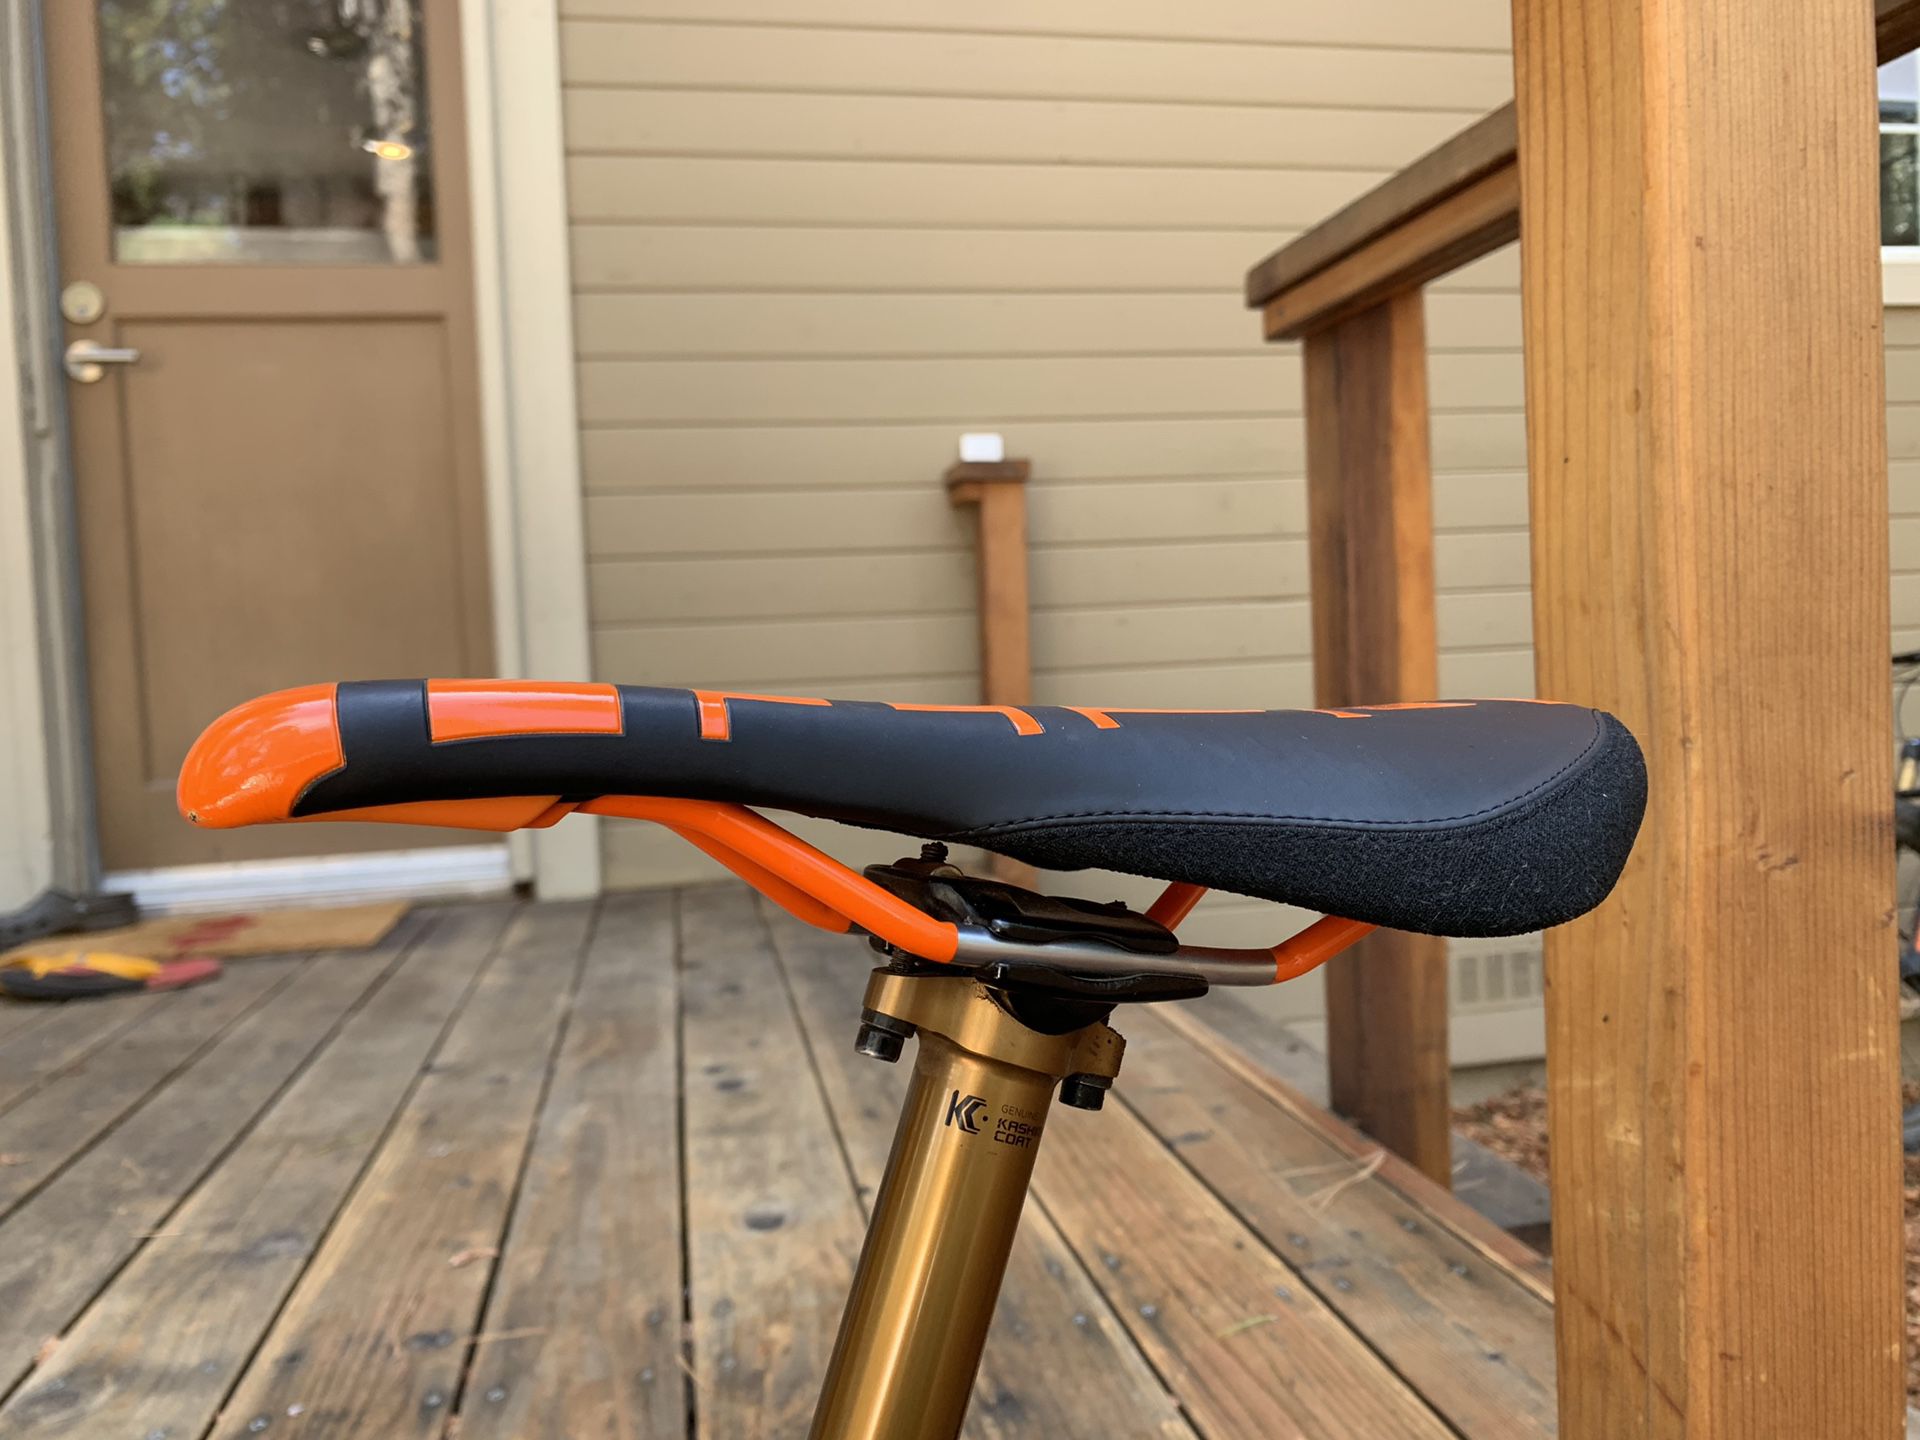 Deity Speedtrap Bike Saddle/Seat- Brand New!